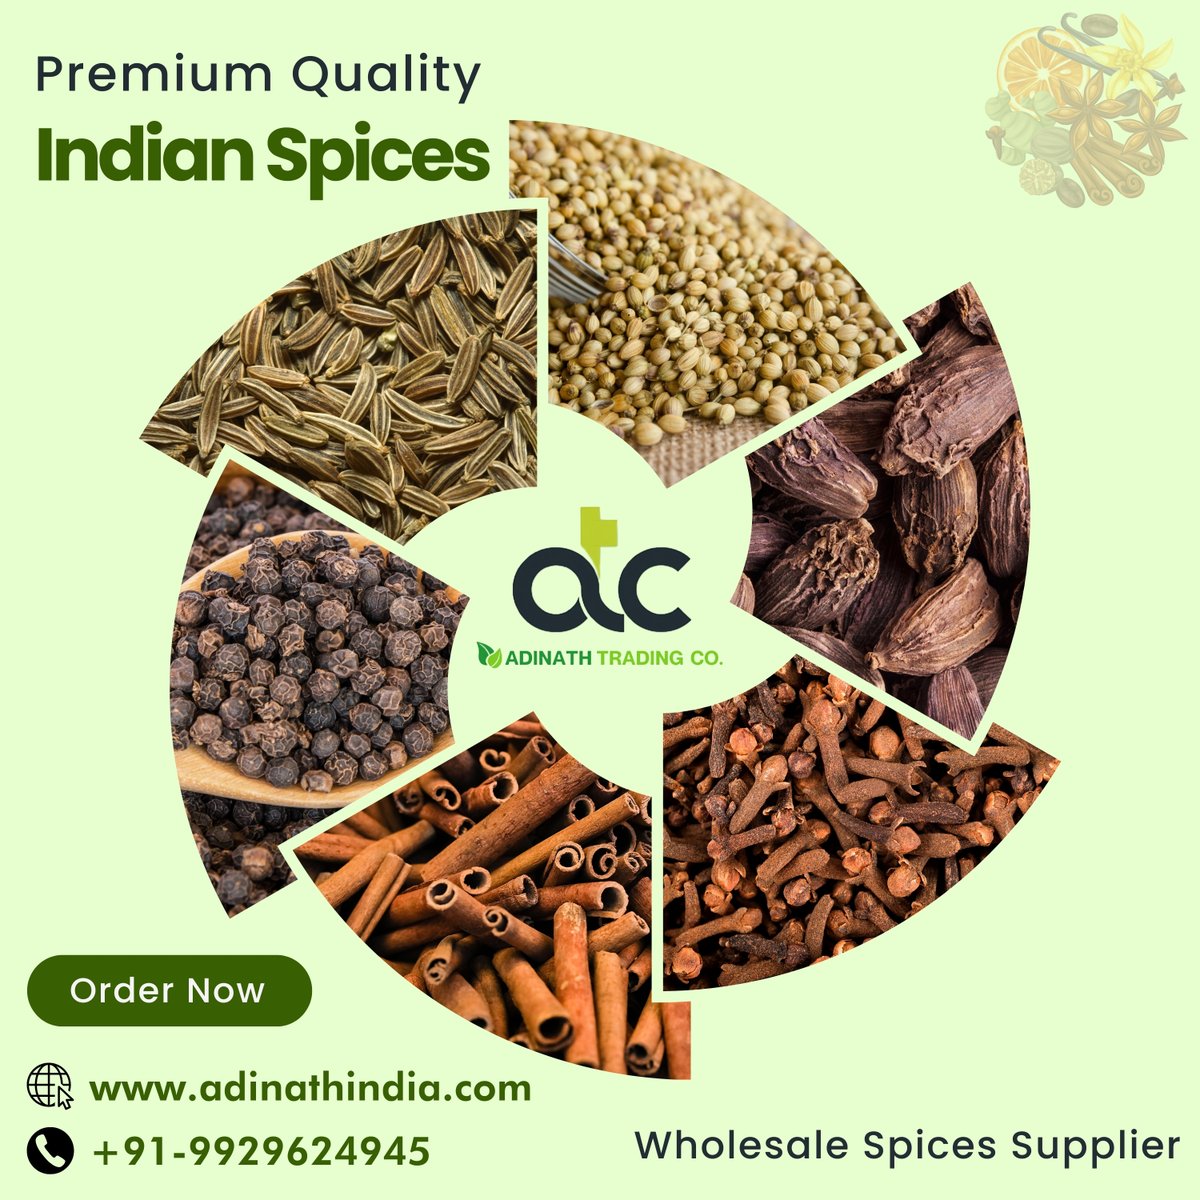 Premium Quality Indian Spices Wholesaler in Jaipur - Adinath India